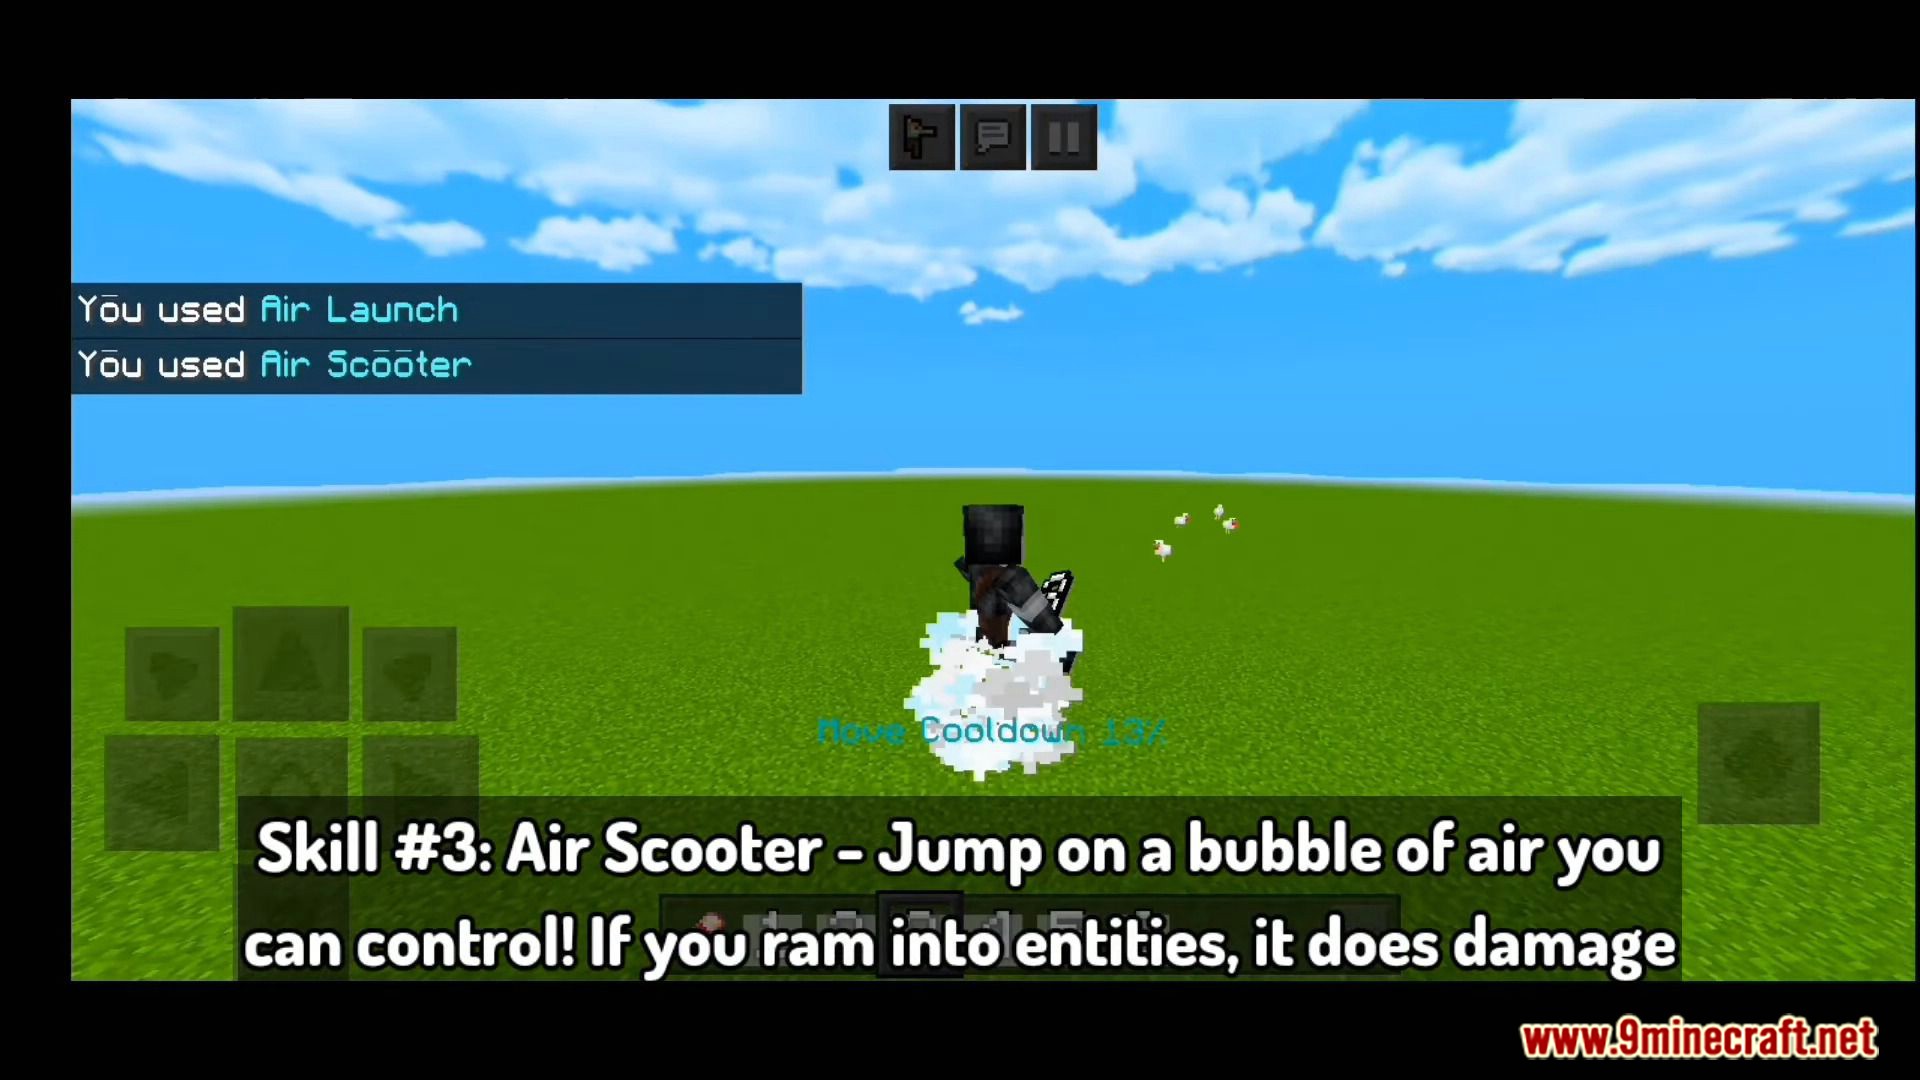 Avatar Airbender addon for Minecraft PE 11951